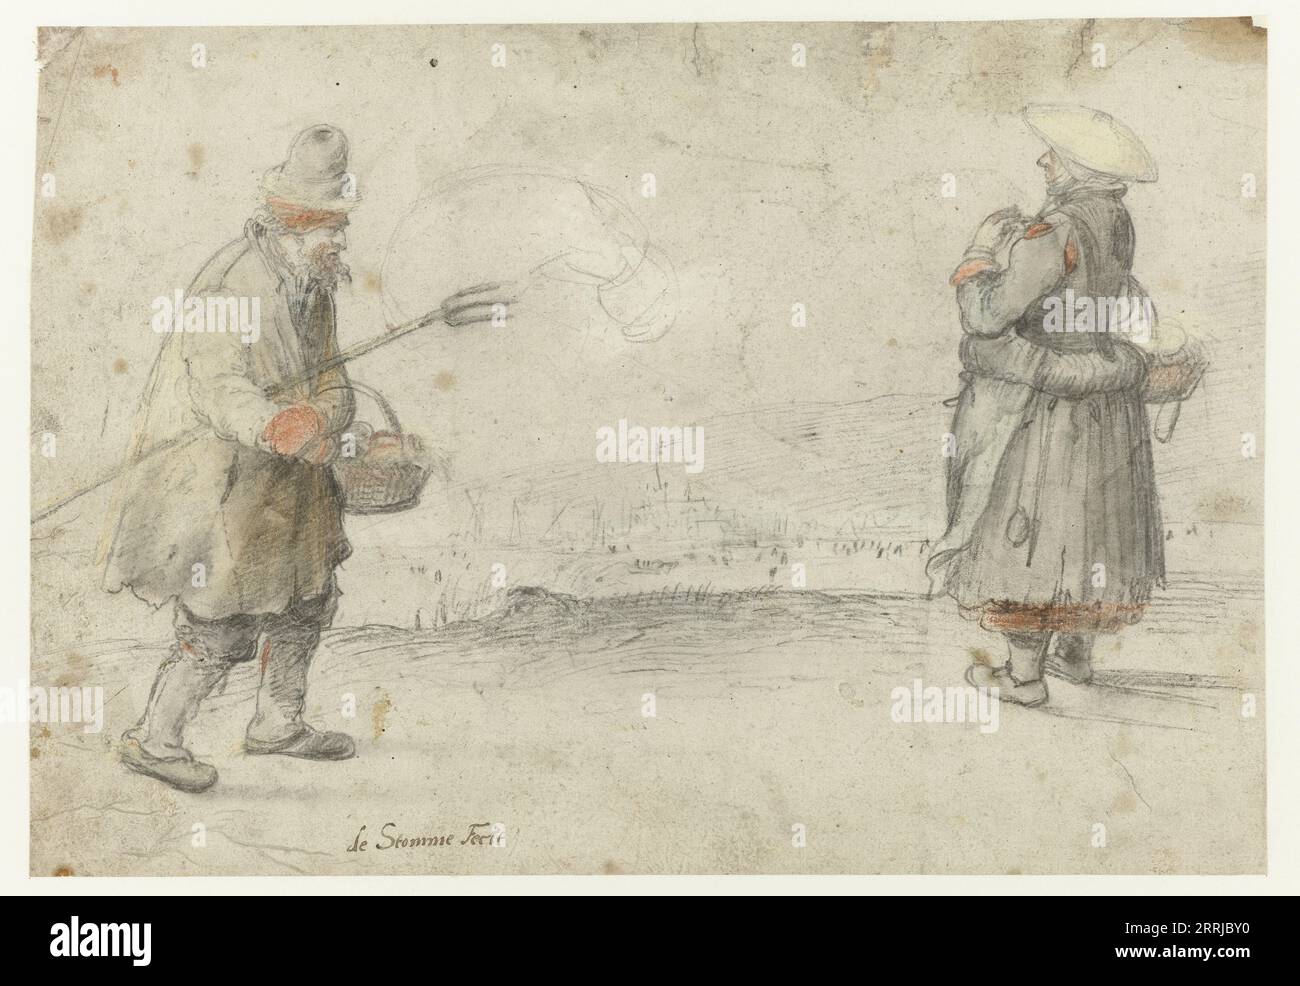 Études d'un homme et d'une femme debout sur la rive d'une rivière gelée, avec une ville au loin, c.1610-c.1615. Attribué à Hendrick Avercamp. Banque D'Images